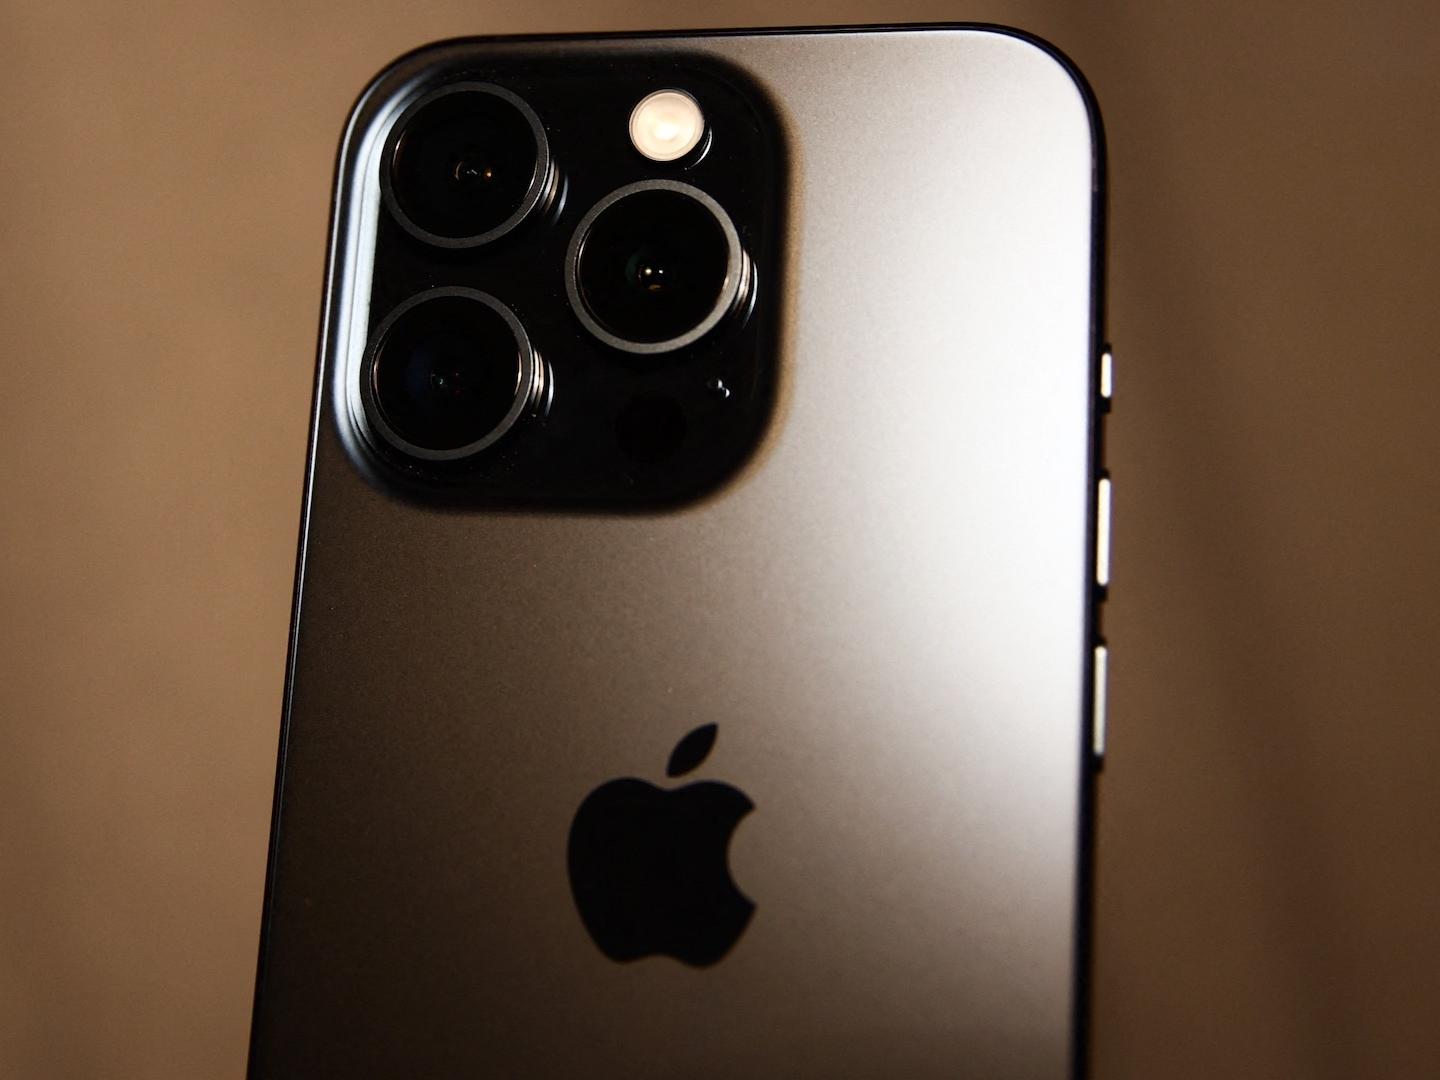 Nueva Actualización del iPhone Revive ‘Nudes’ Ya Borradas